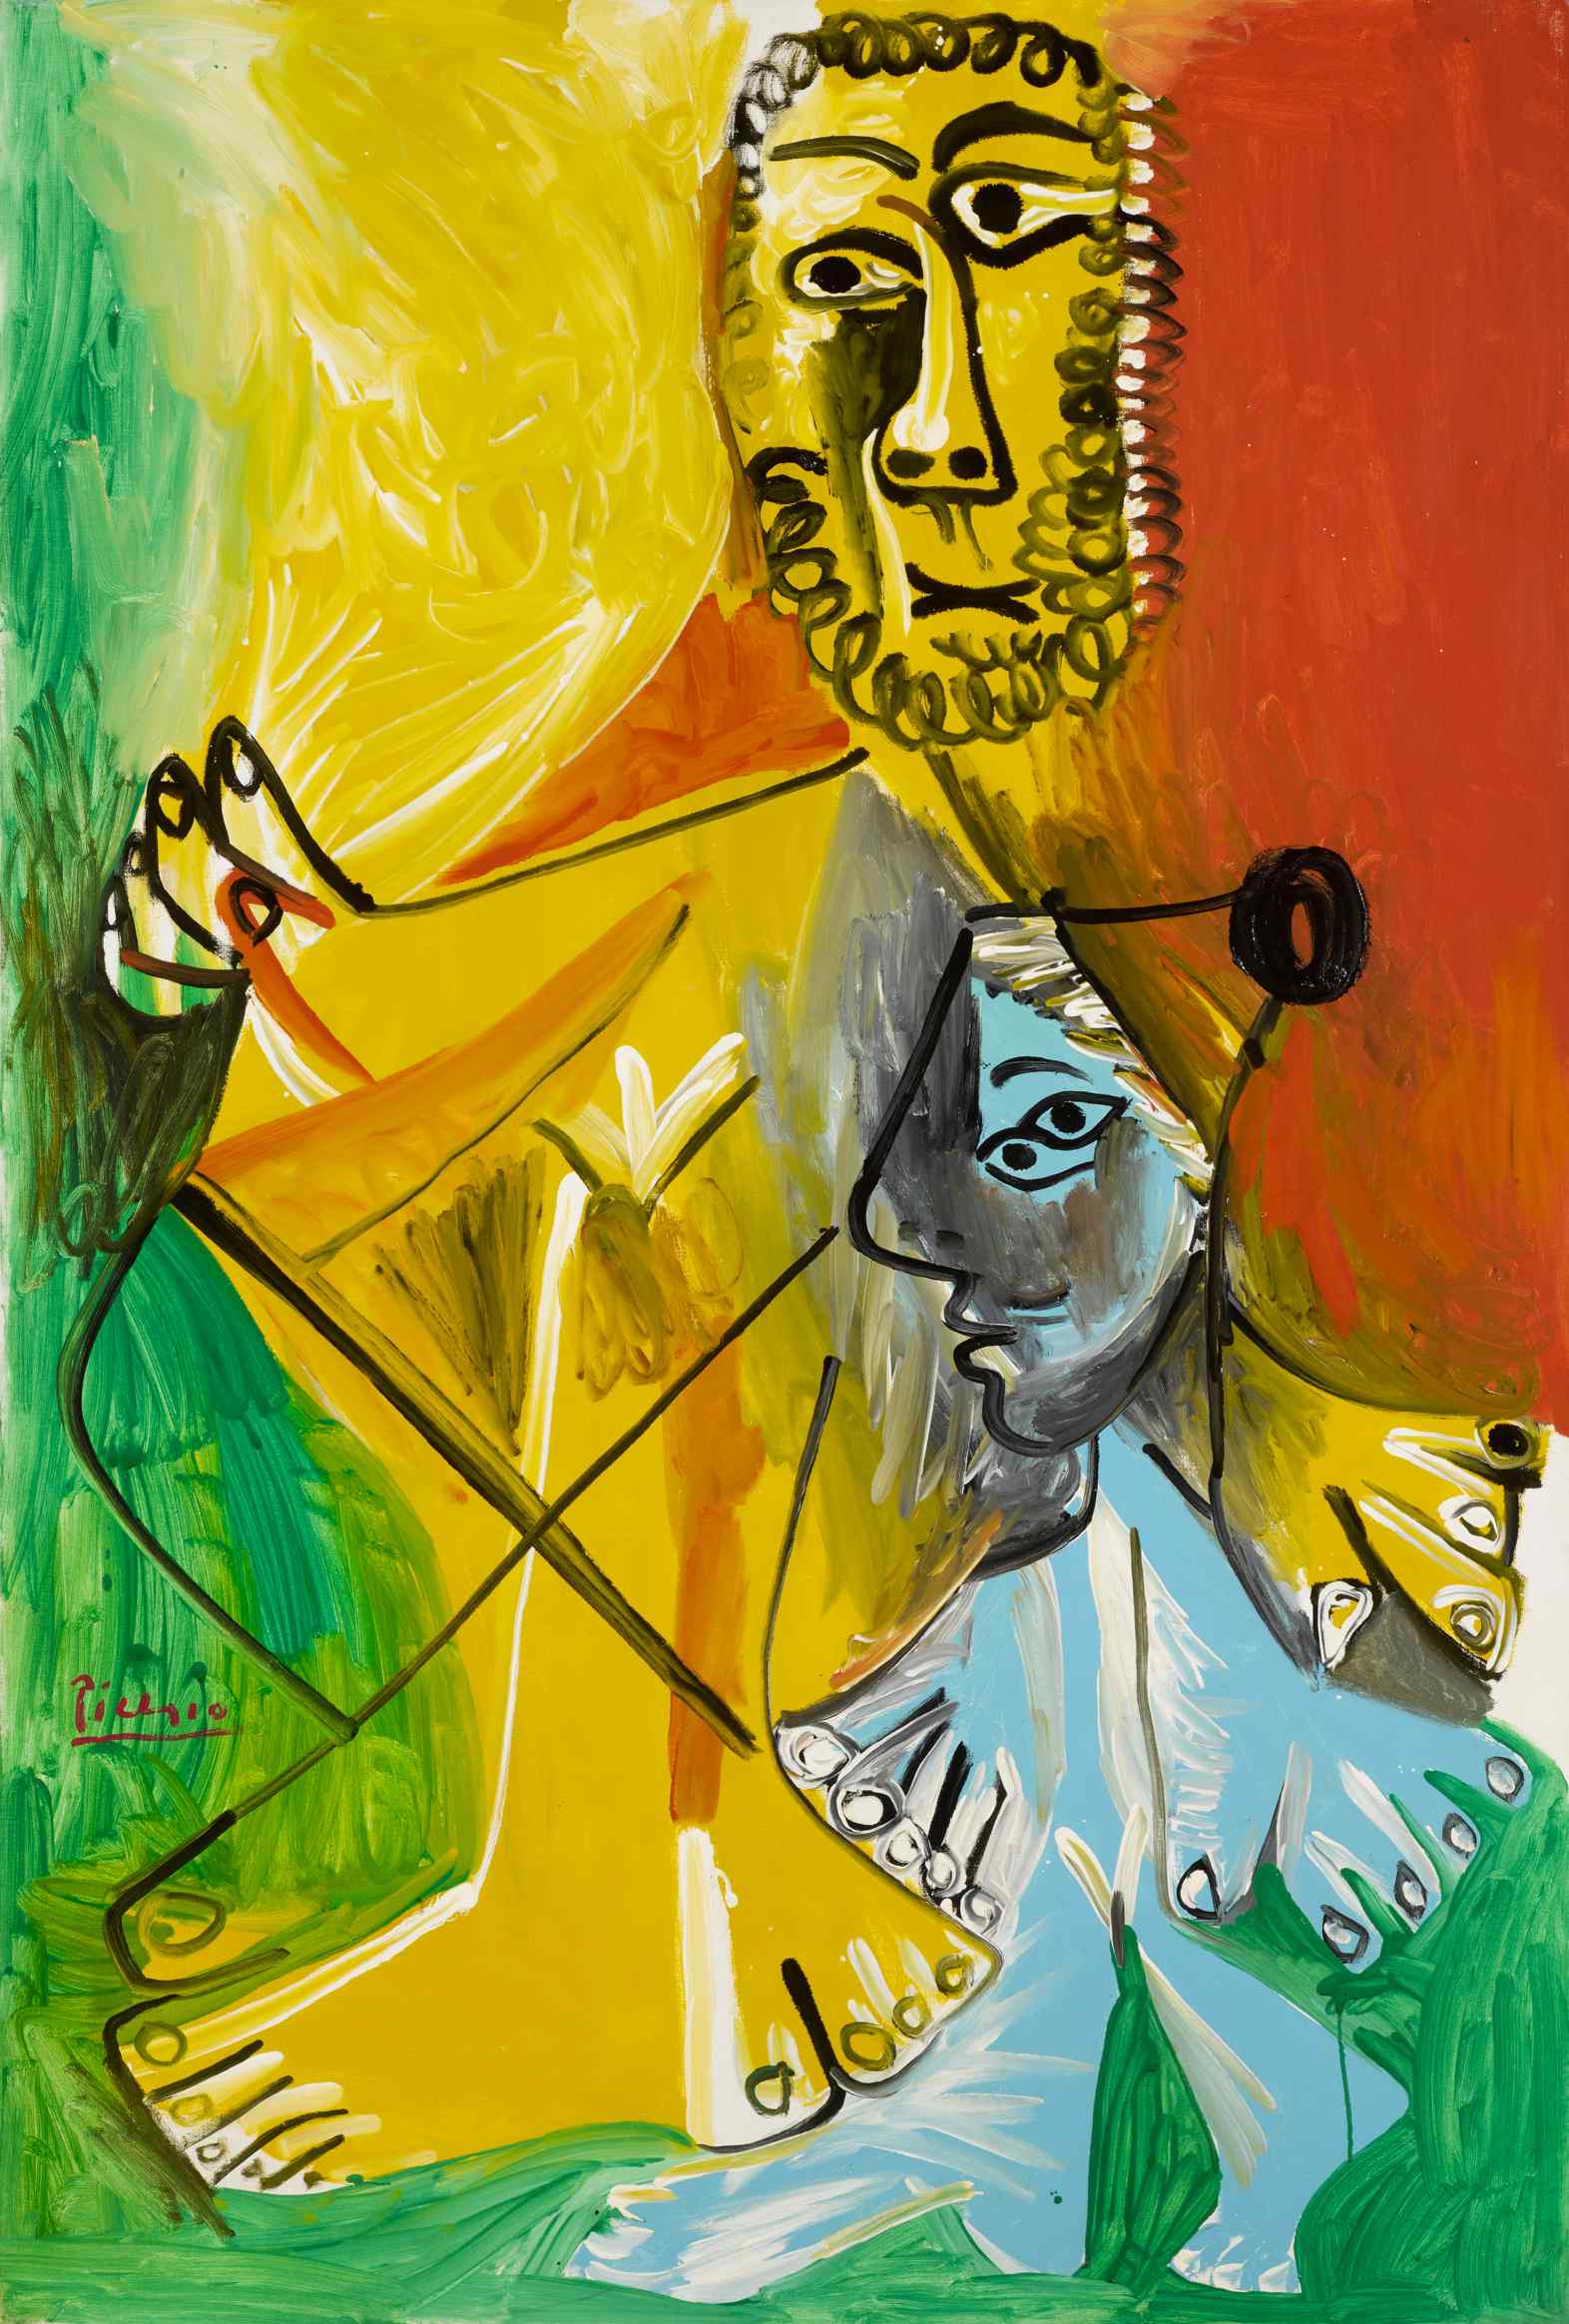 Pablo Picasso's "Homme et enfant"